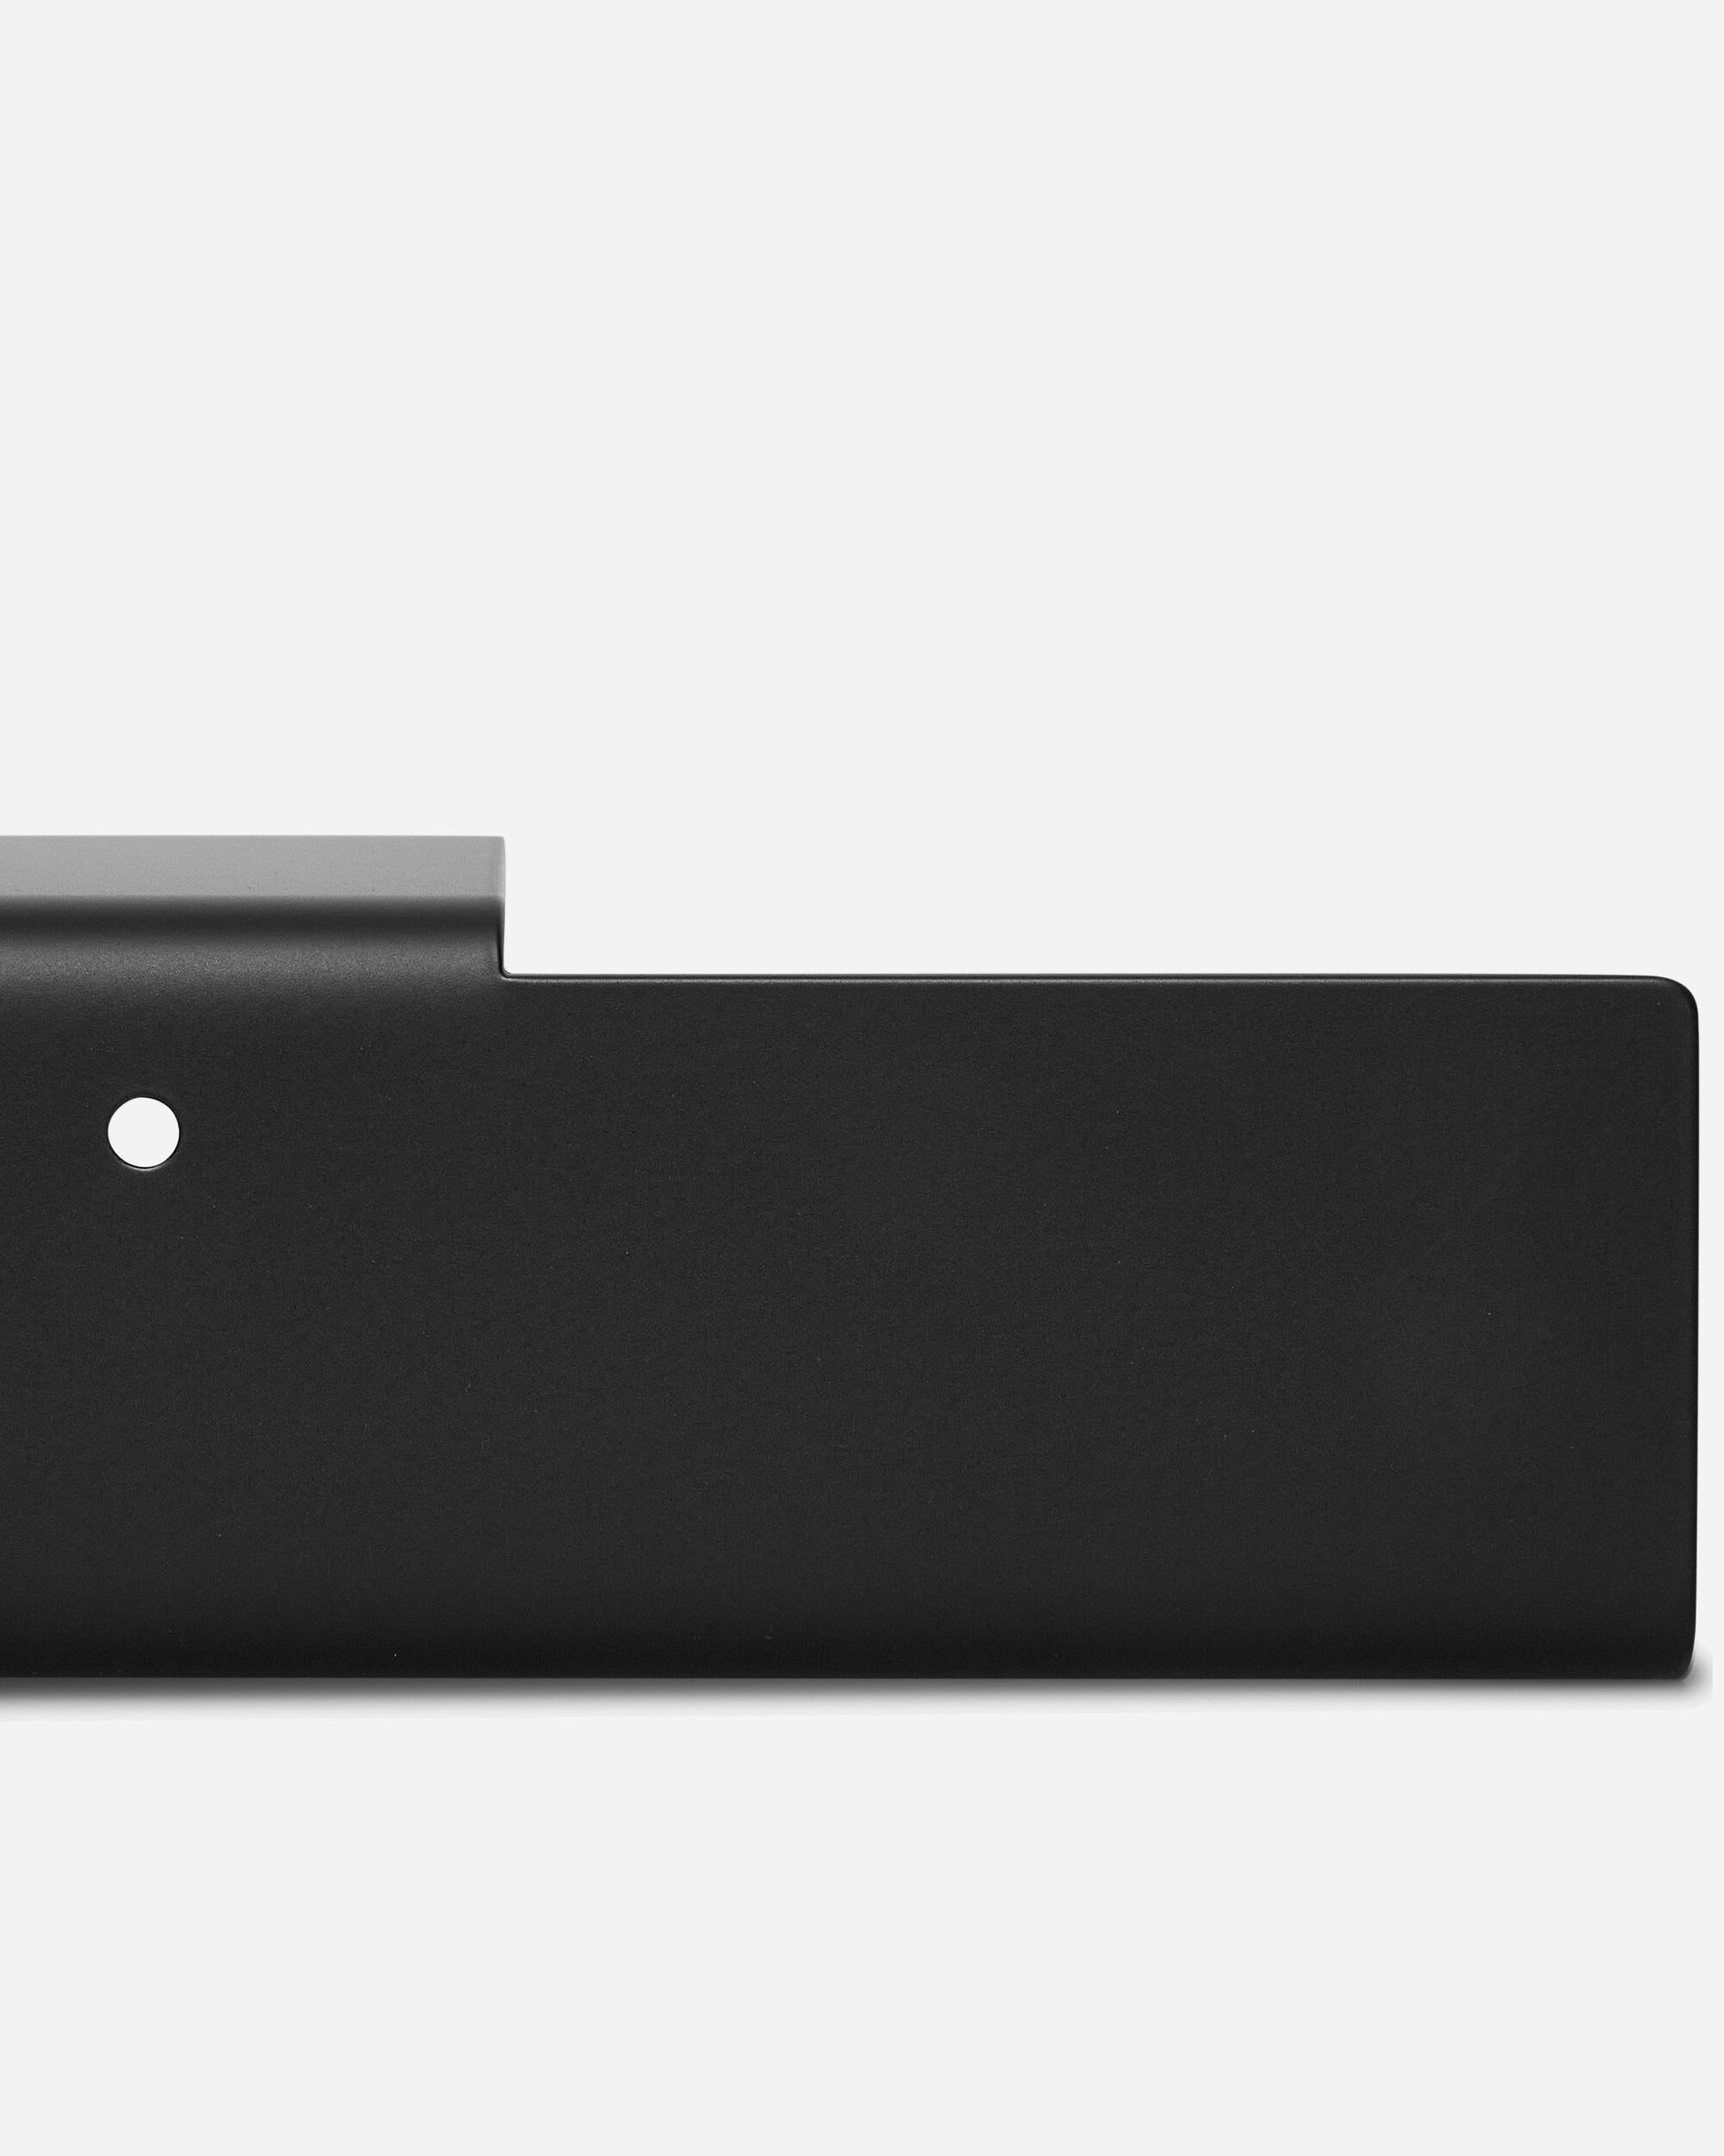 New Tendency Float Shelf Black Homeware Design Items FLO210 023